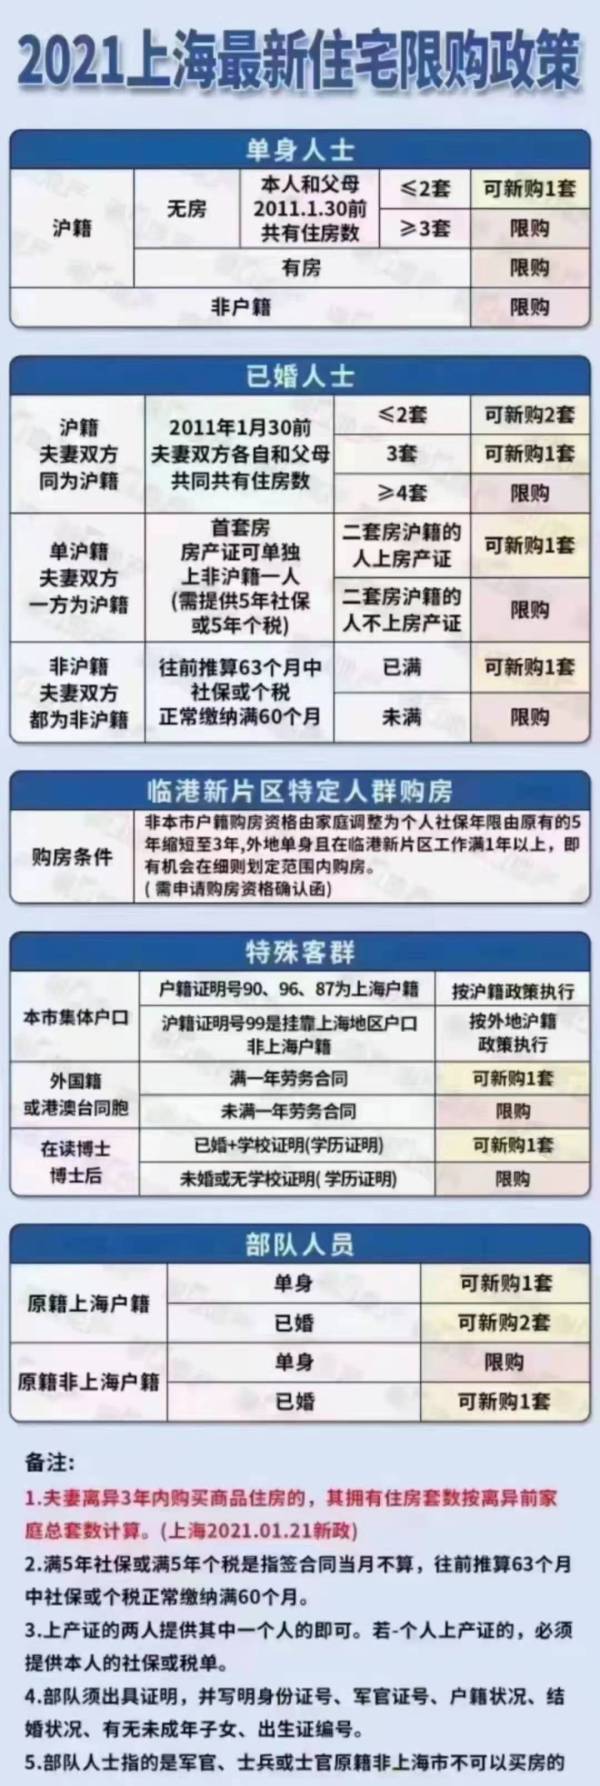 上海楼市调控 法拍房纳入限购_上海二手房限购_上海二手多层房价格